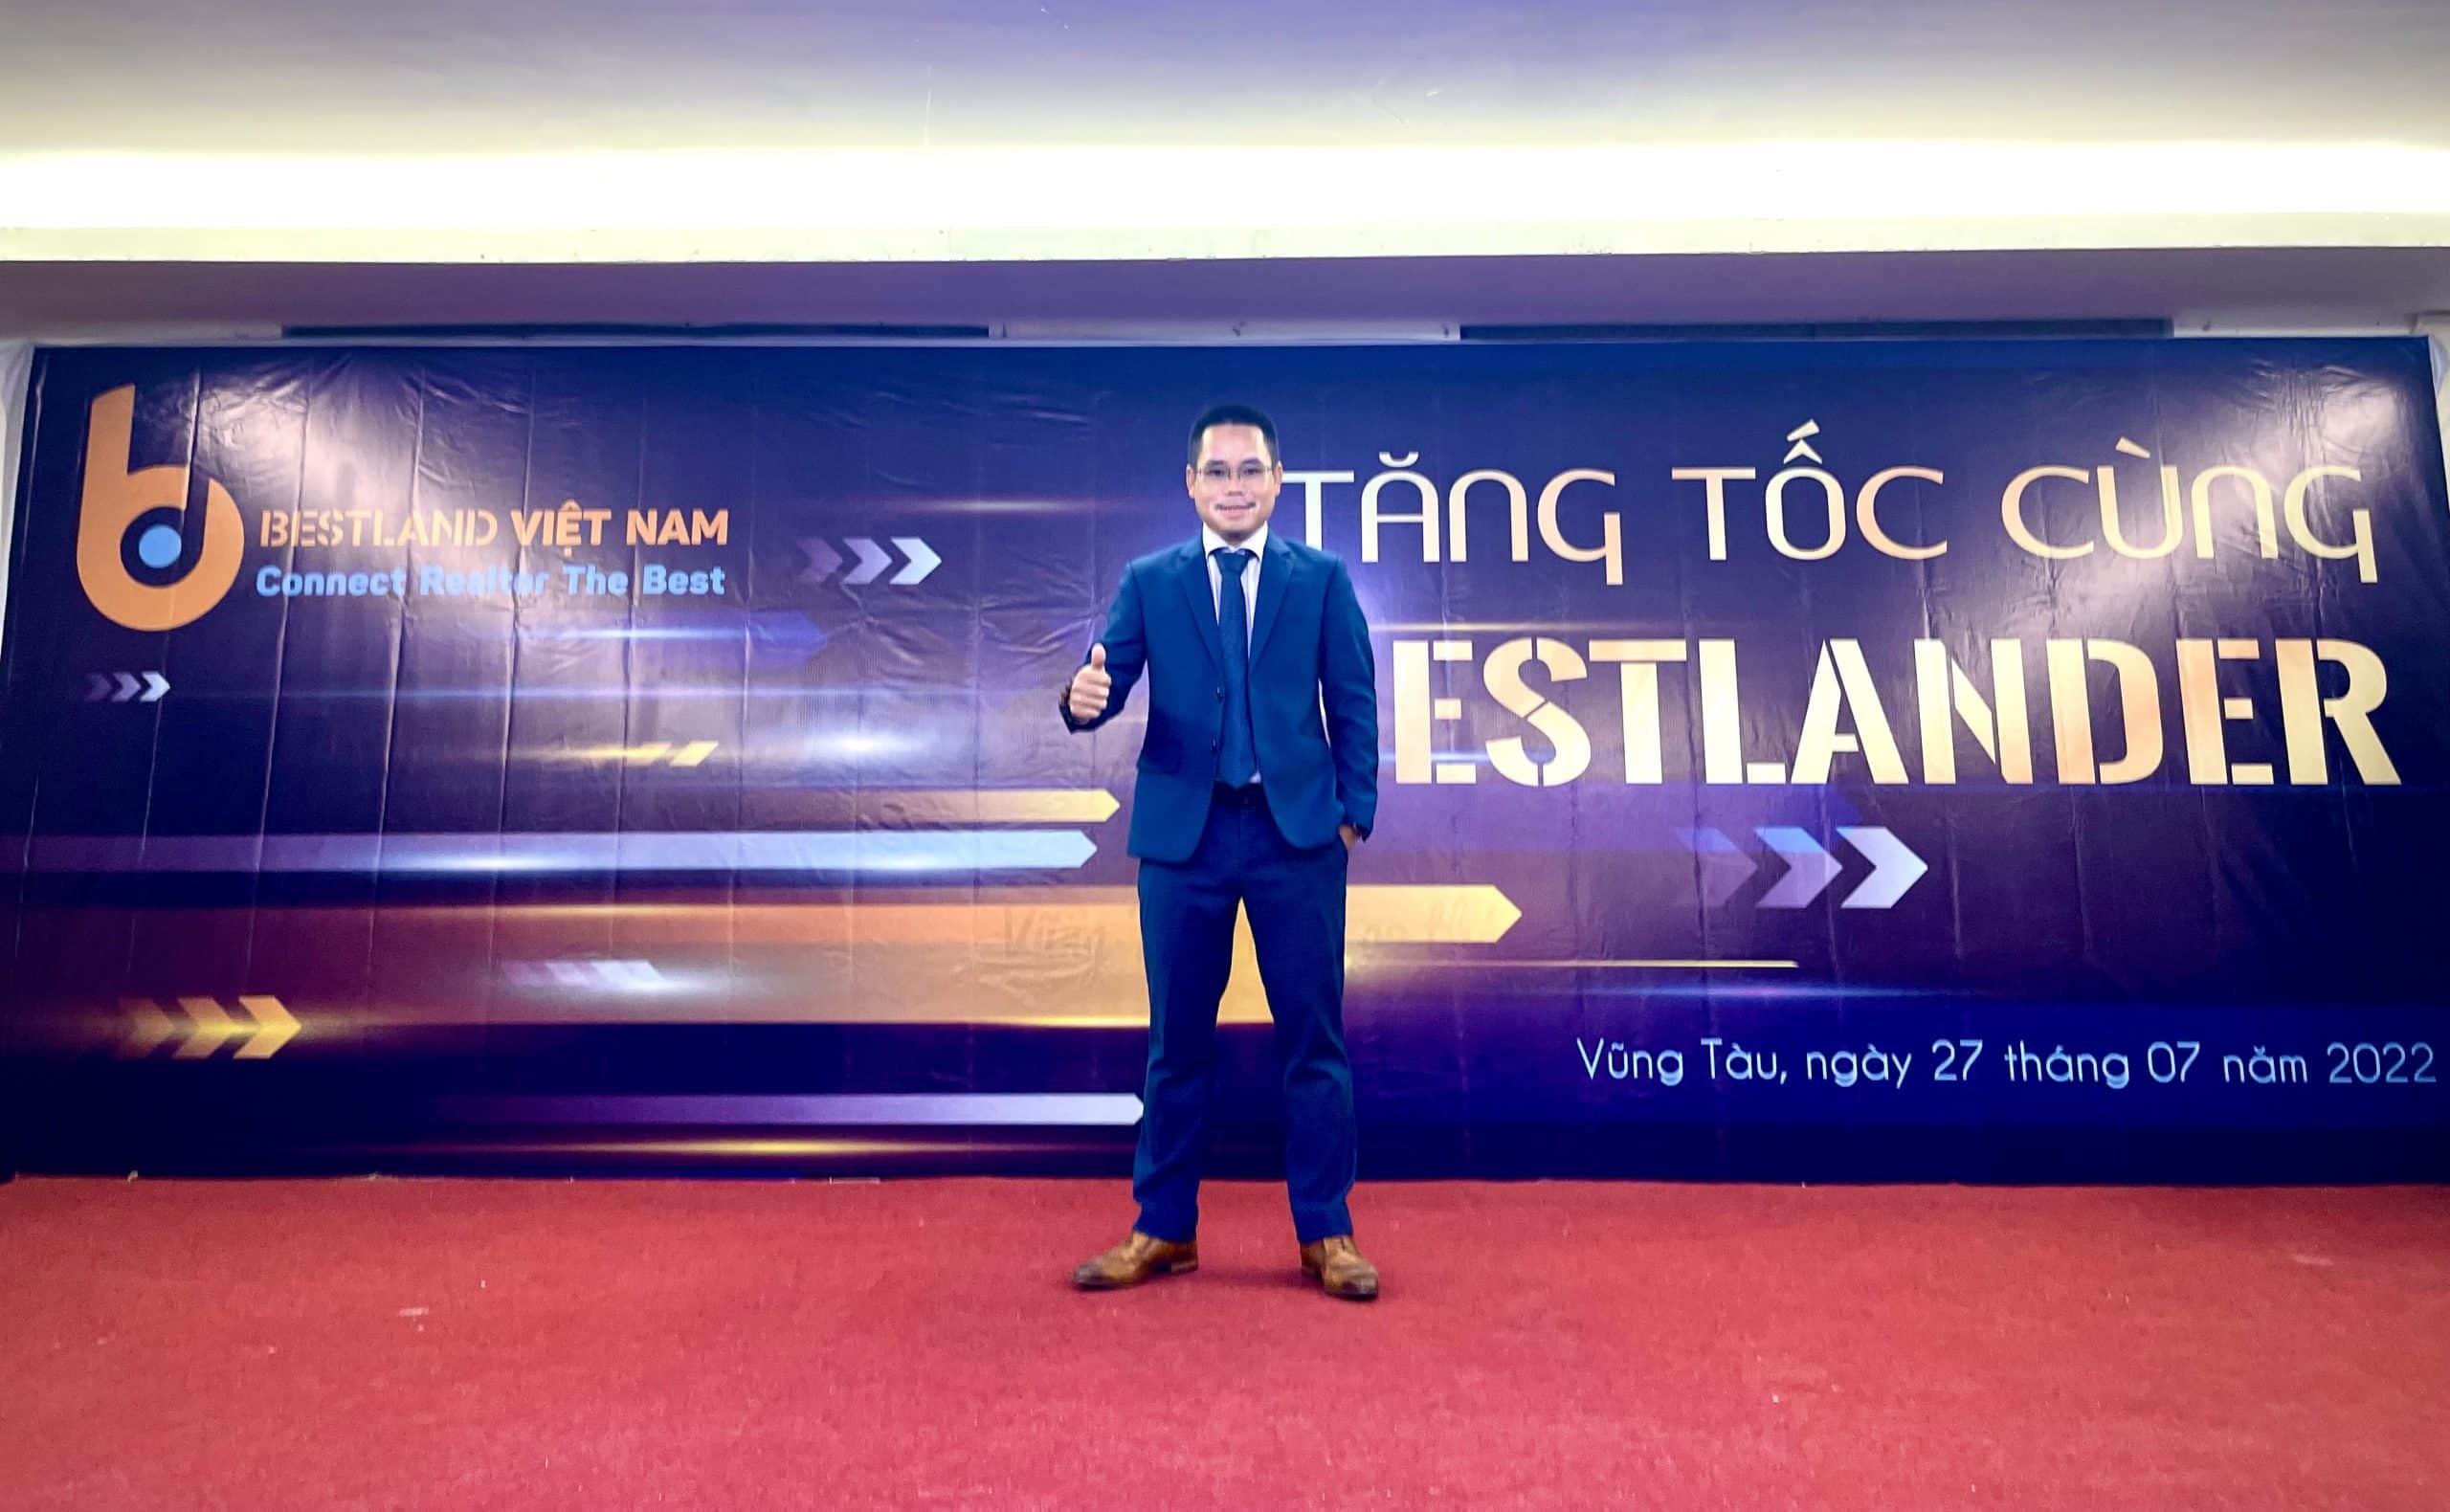 Ông Nguyến Đình Đại -TGĐ Công ty Cổ phần Bất động sản Bestland Việt Nam